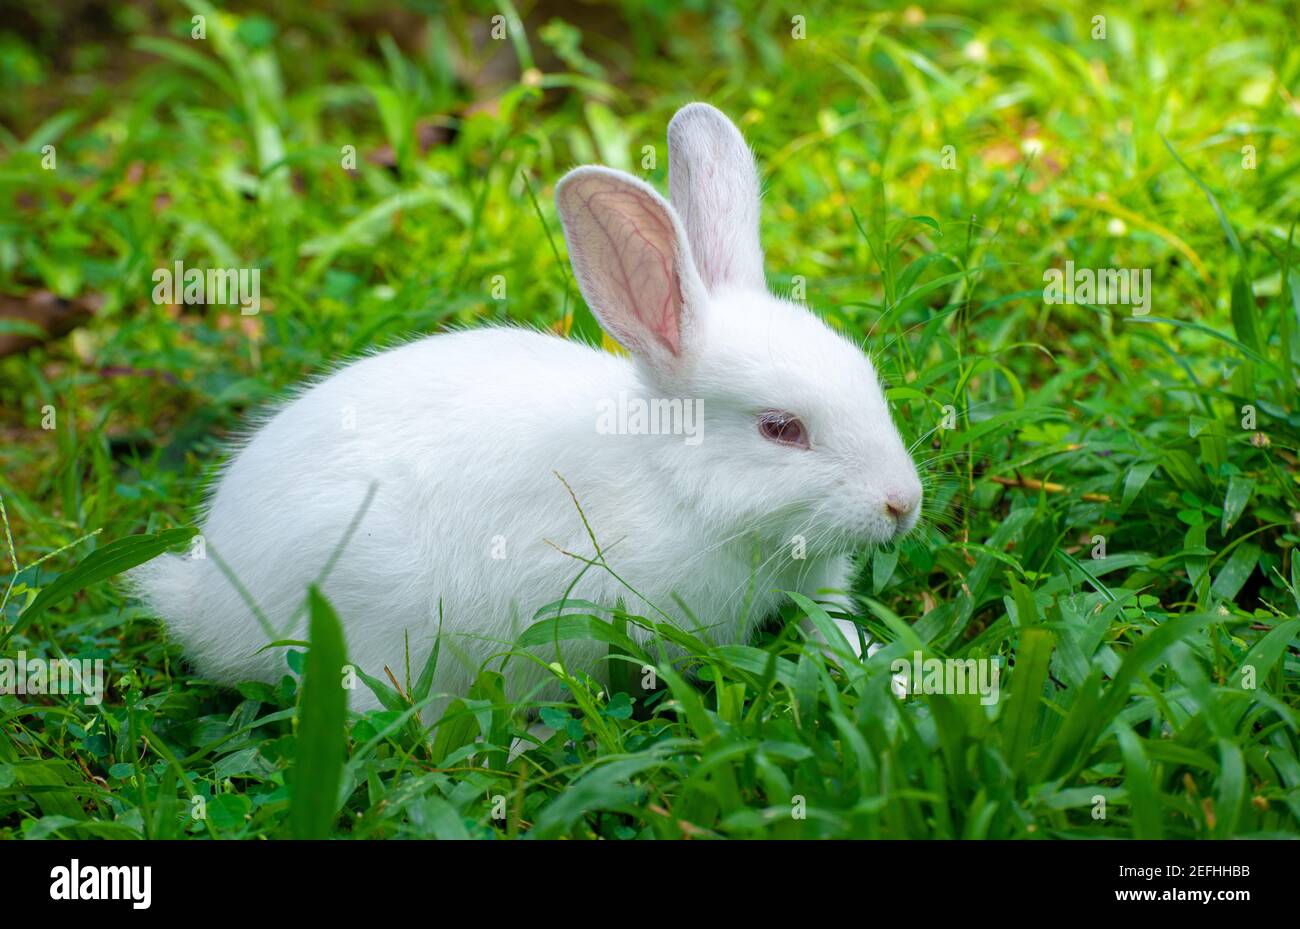 Niedliches und kuscheliges Albino Hase Kaninchen Baby auf dem Grasfeld,  bekam rote Augen und lange Wimpern, lange Ohren nach oben, Licht durch die  langen Ohren und p Stockfotografie - Alamy